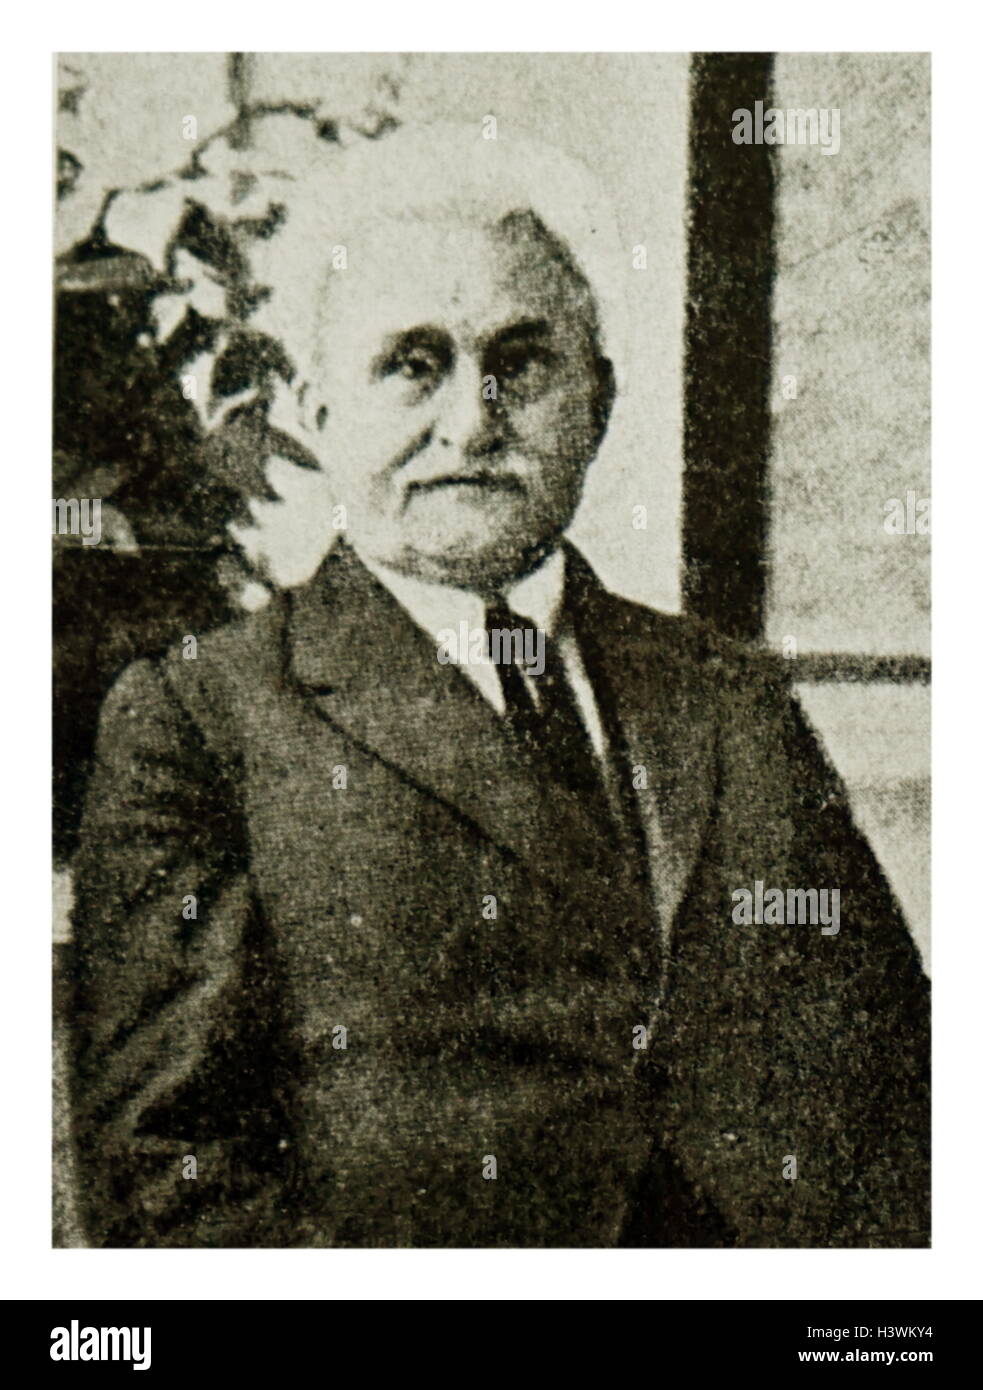 Ritratto fotografico di Leoš Janácek (1854-1928) un compositore ceco, teorico musicale, manifestazioni folcloristiche, pubblicista e insegnante. In data xx secolo Foto Stock